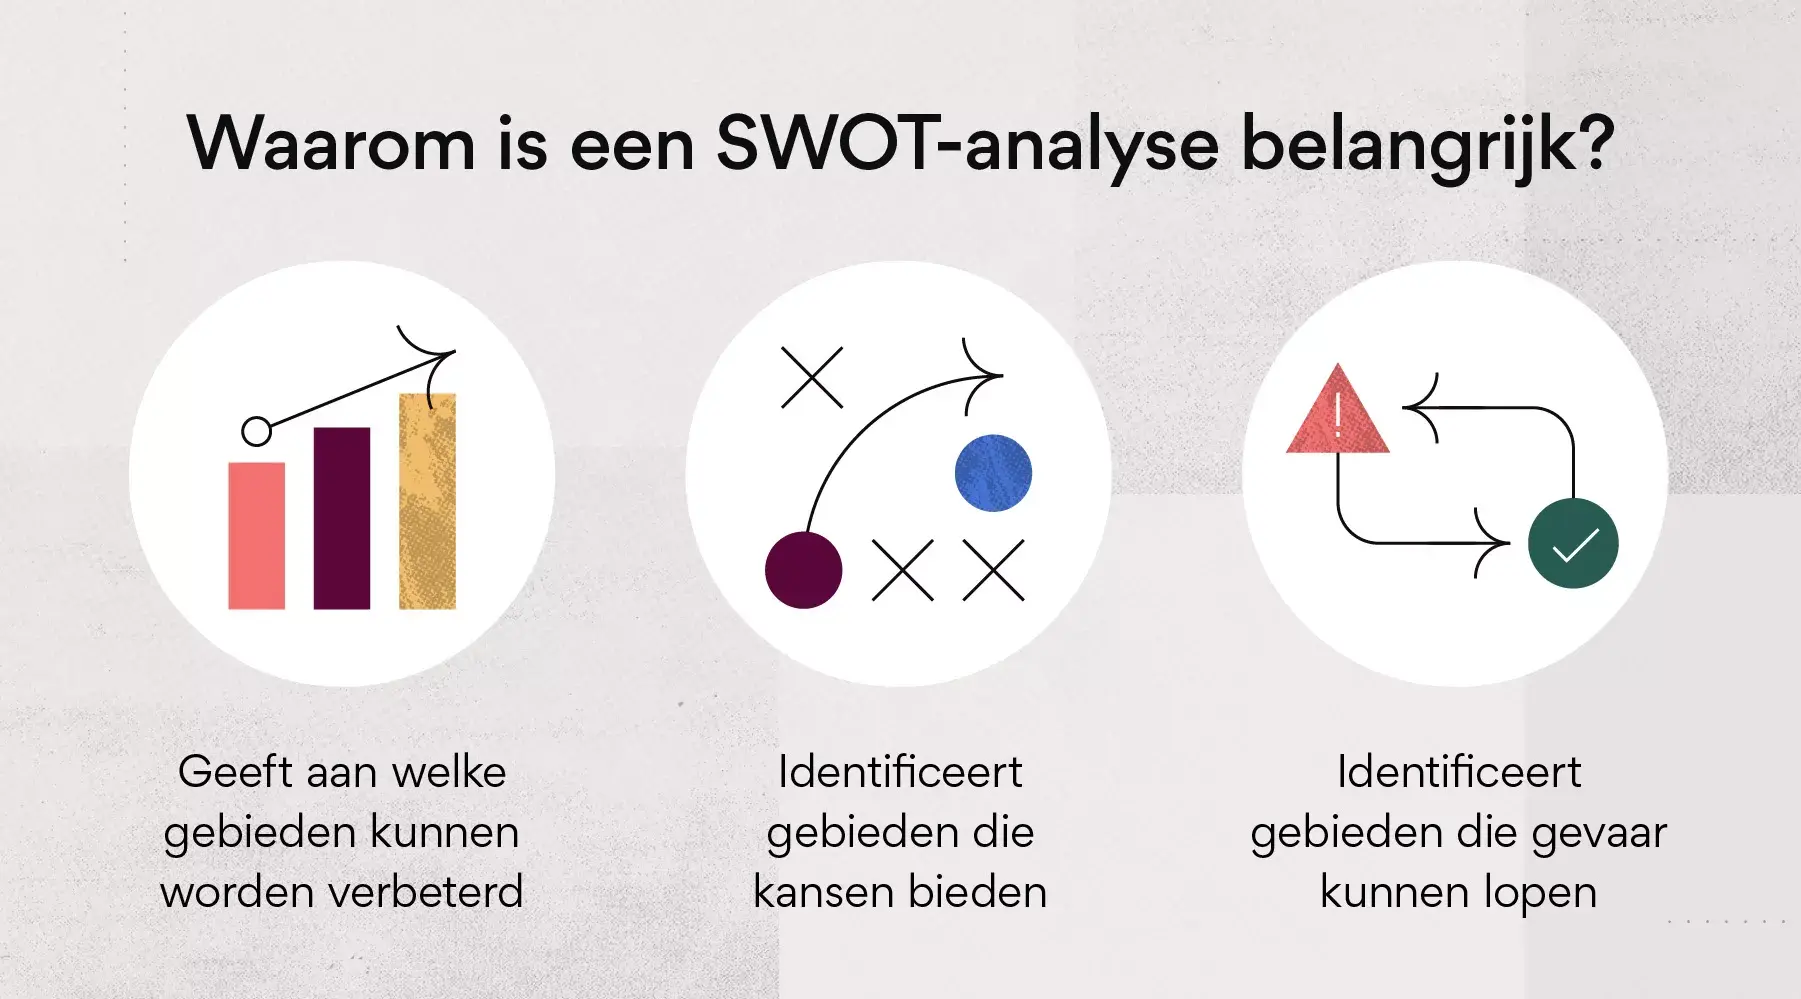 Waarom is een SWOT-analyse belangrijk?